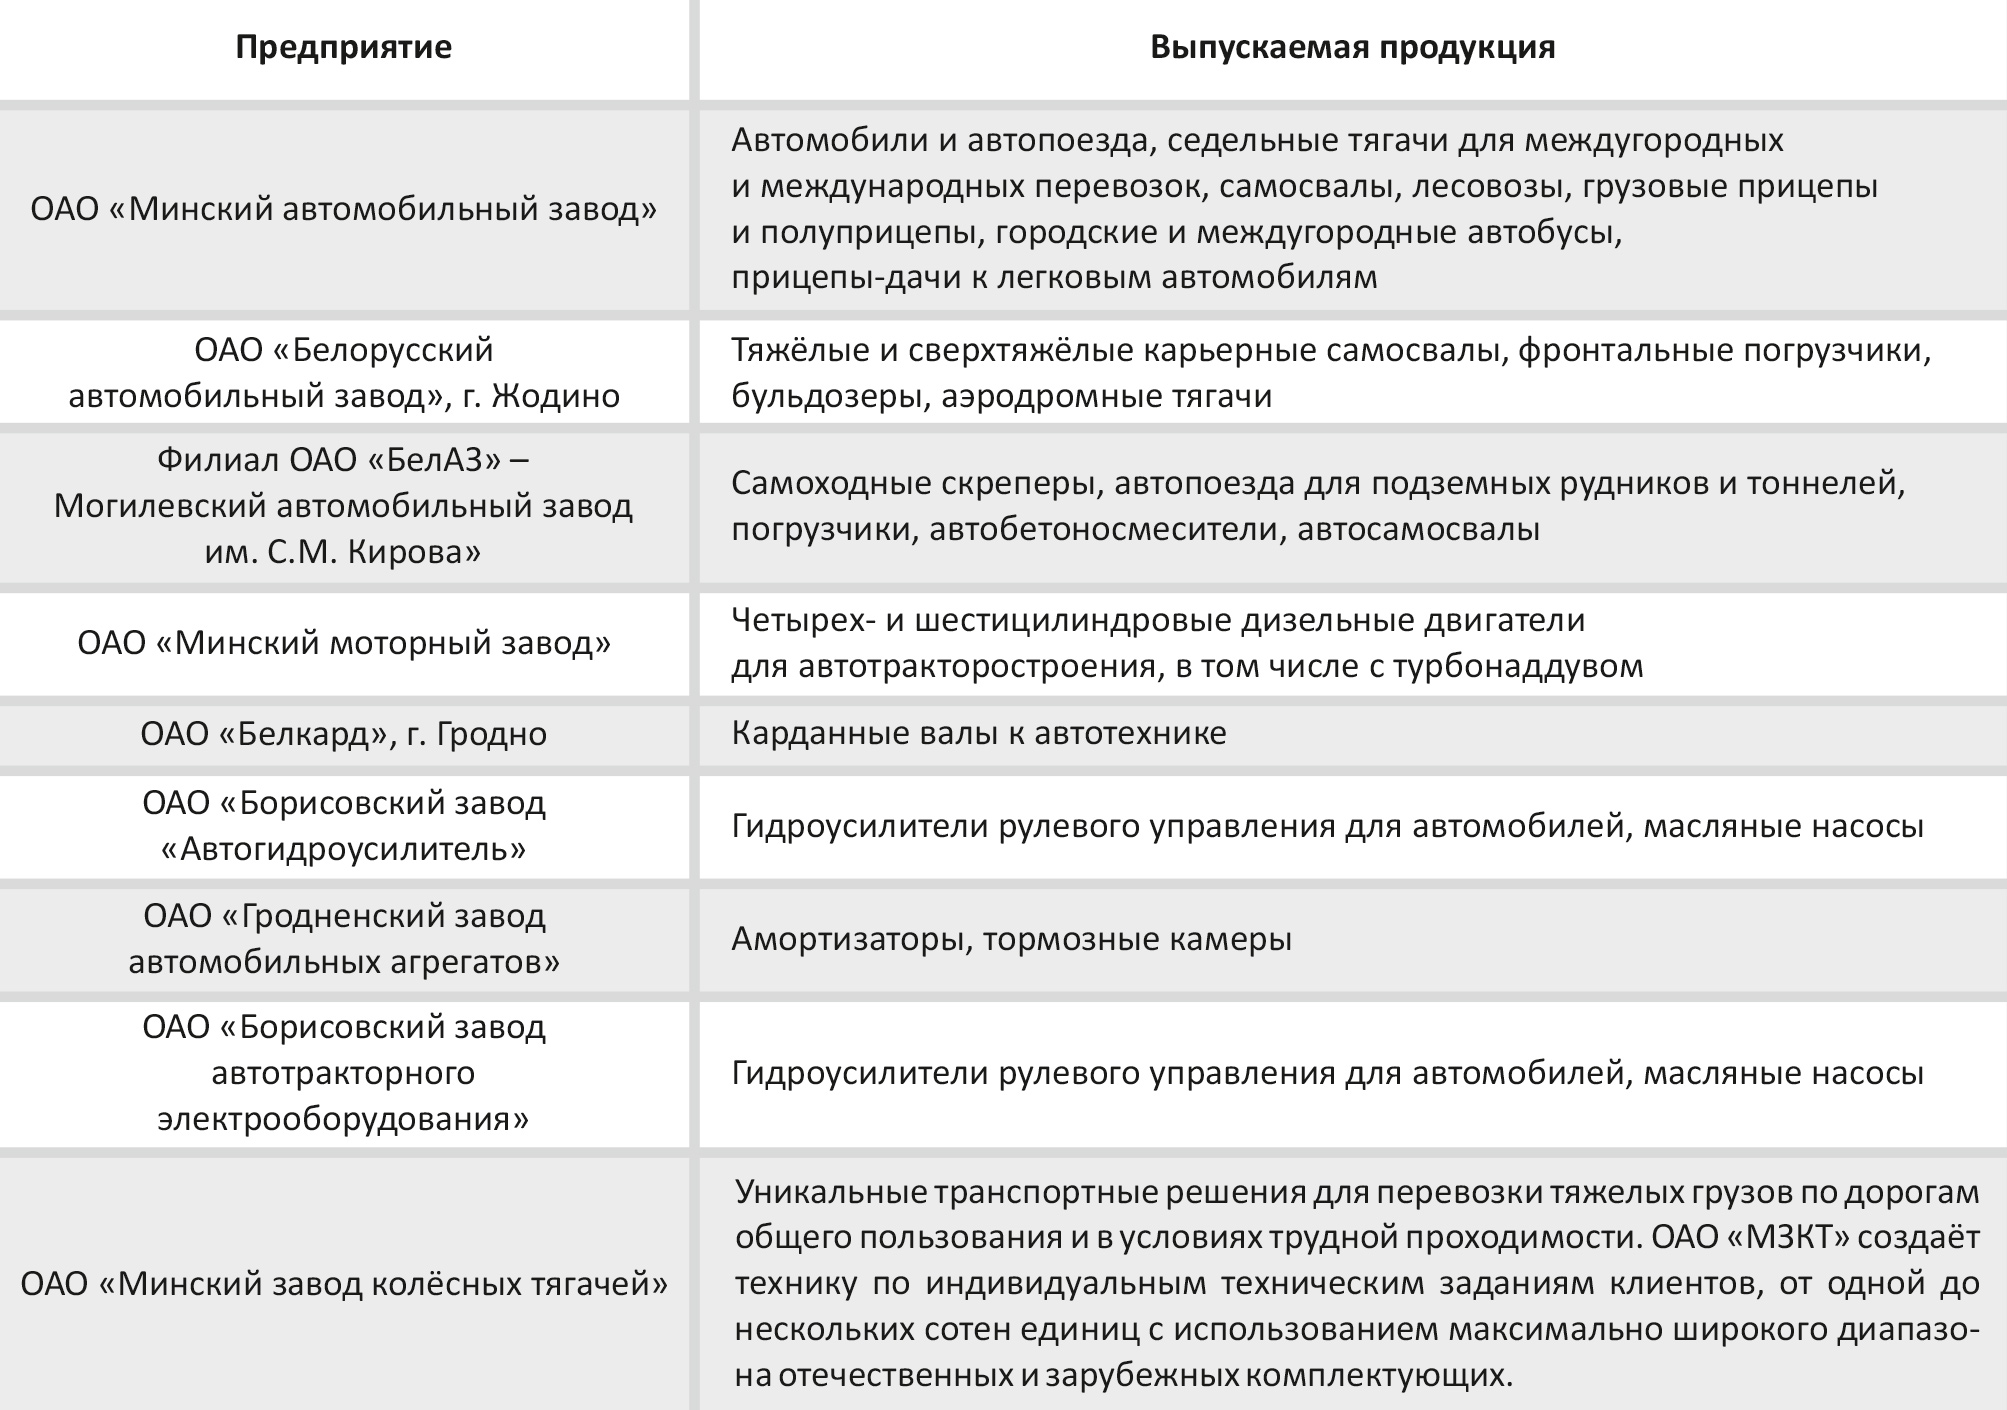 Основные предприятия автомобилестроения в Республике Беларусь